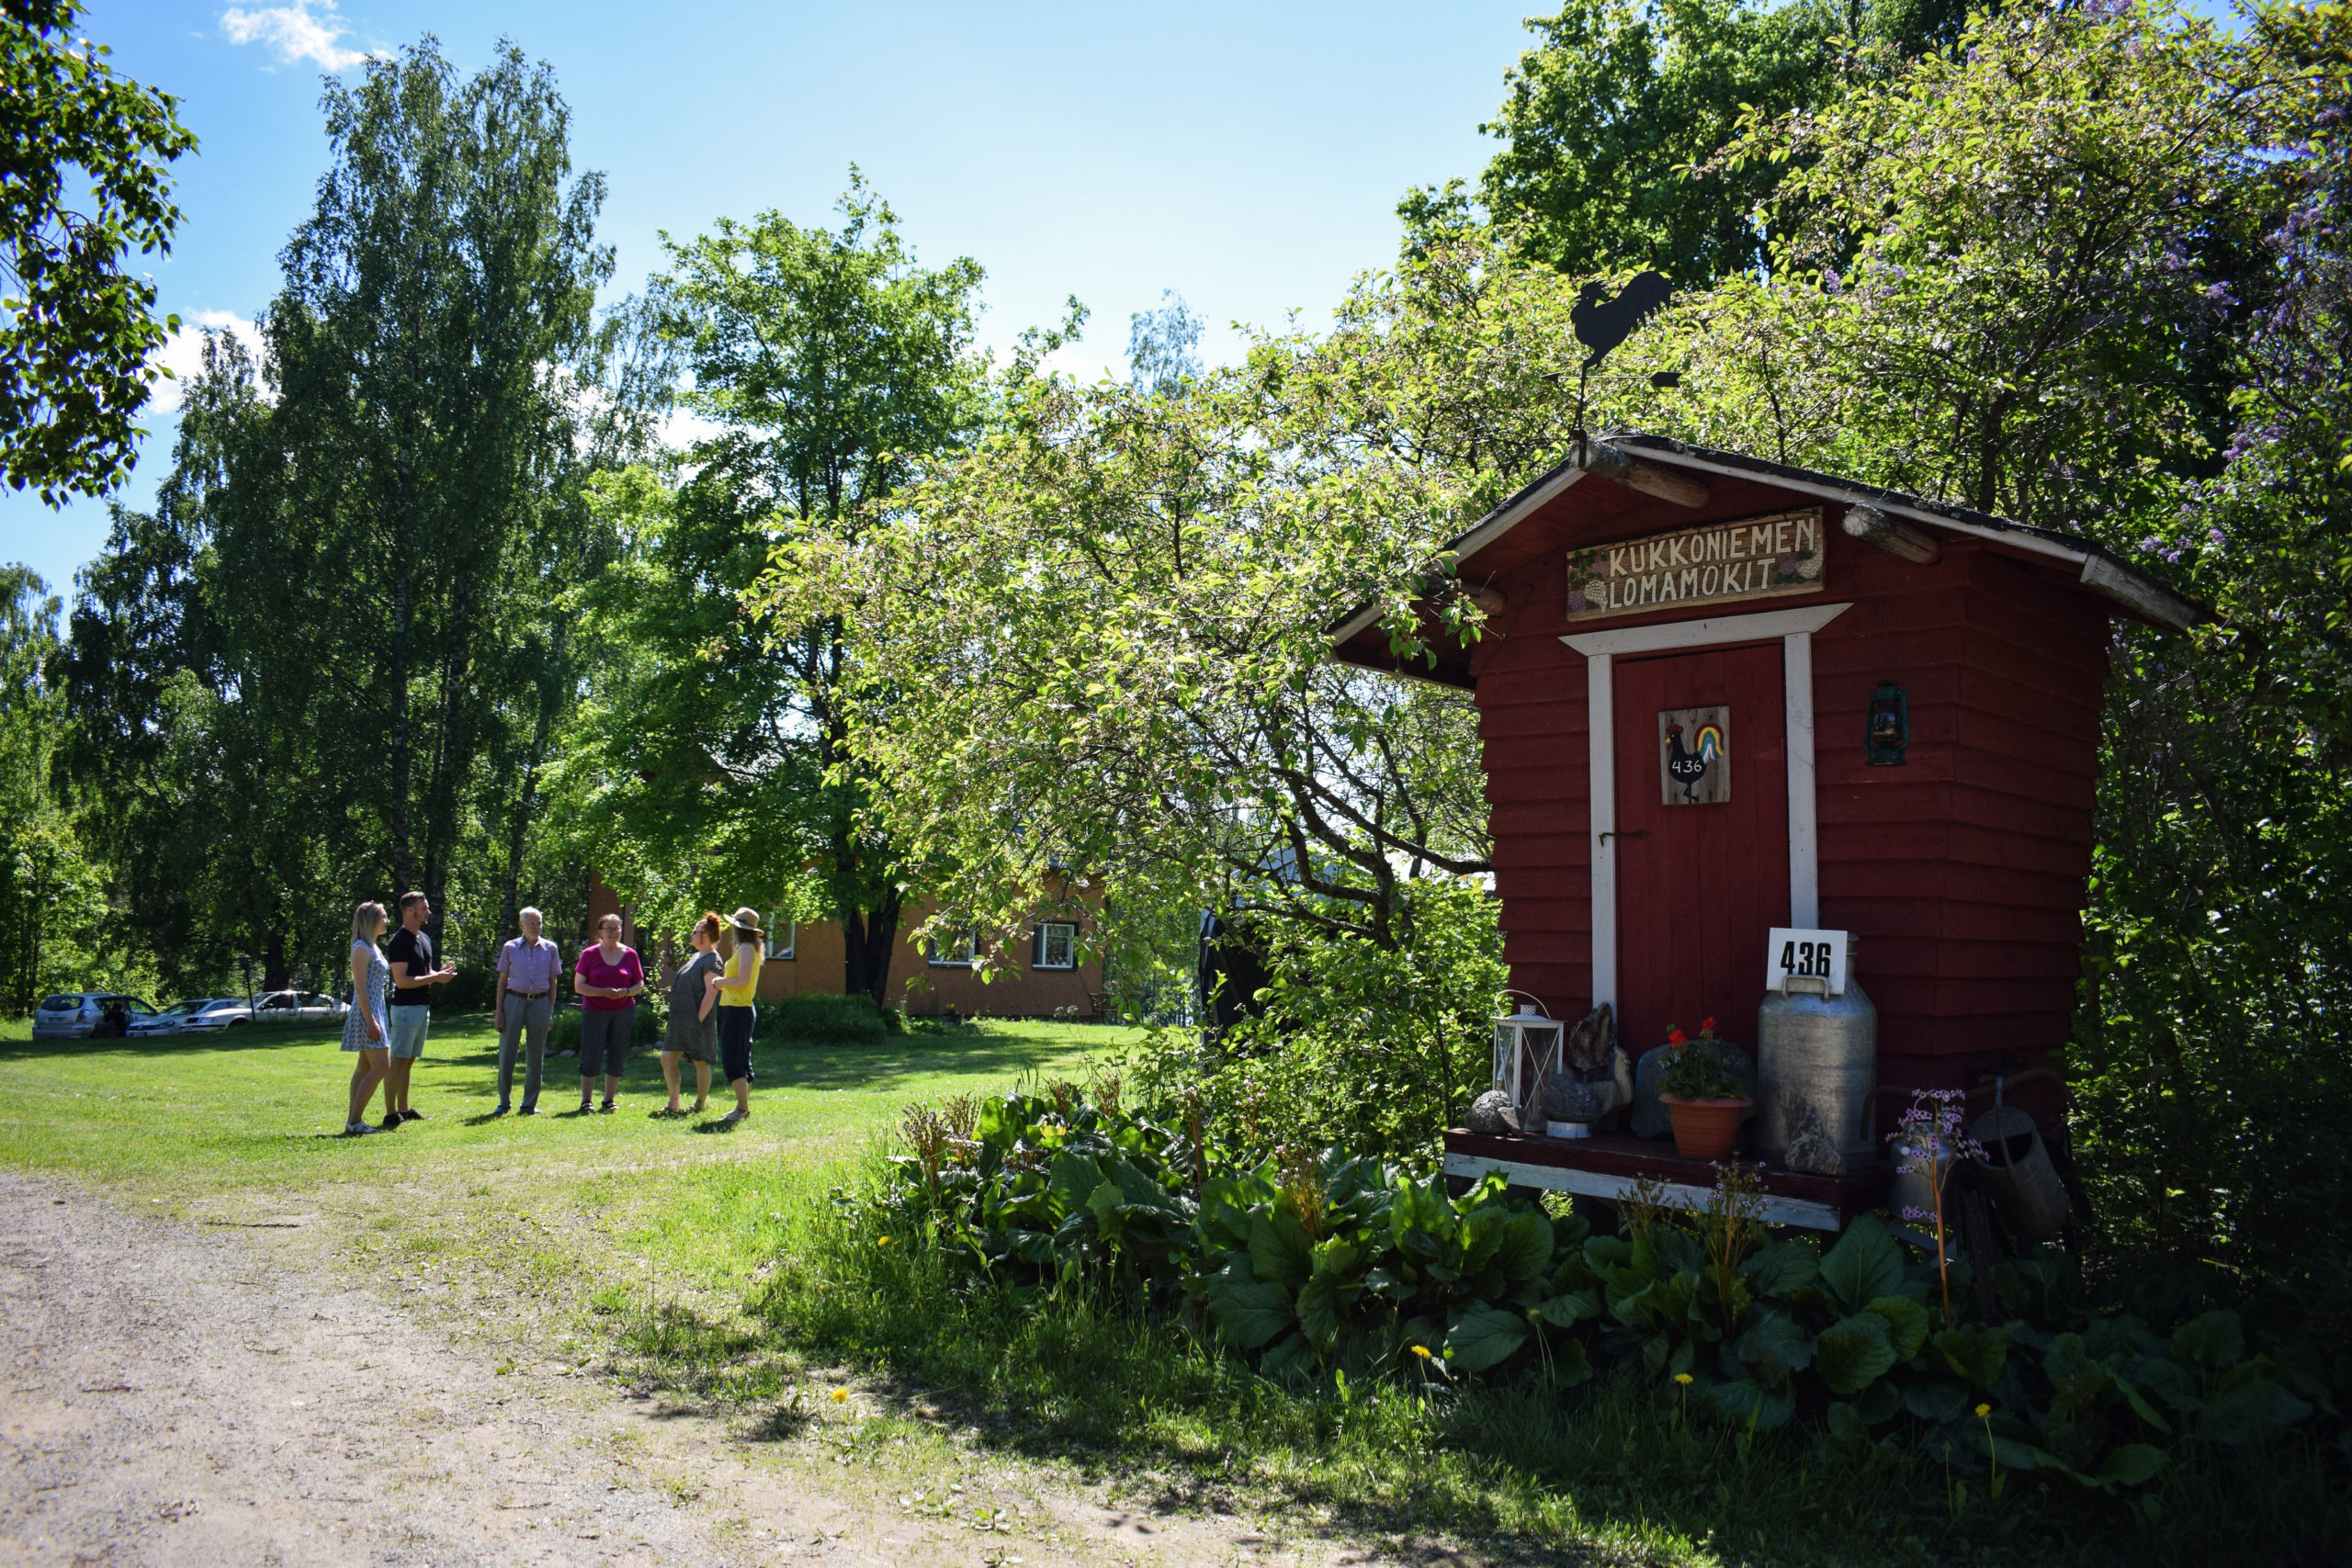 Kukkoniemen Lomamökit rental cottages travel company in Punkaharju, Saimaa